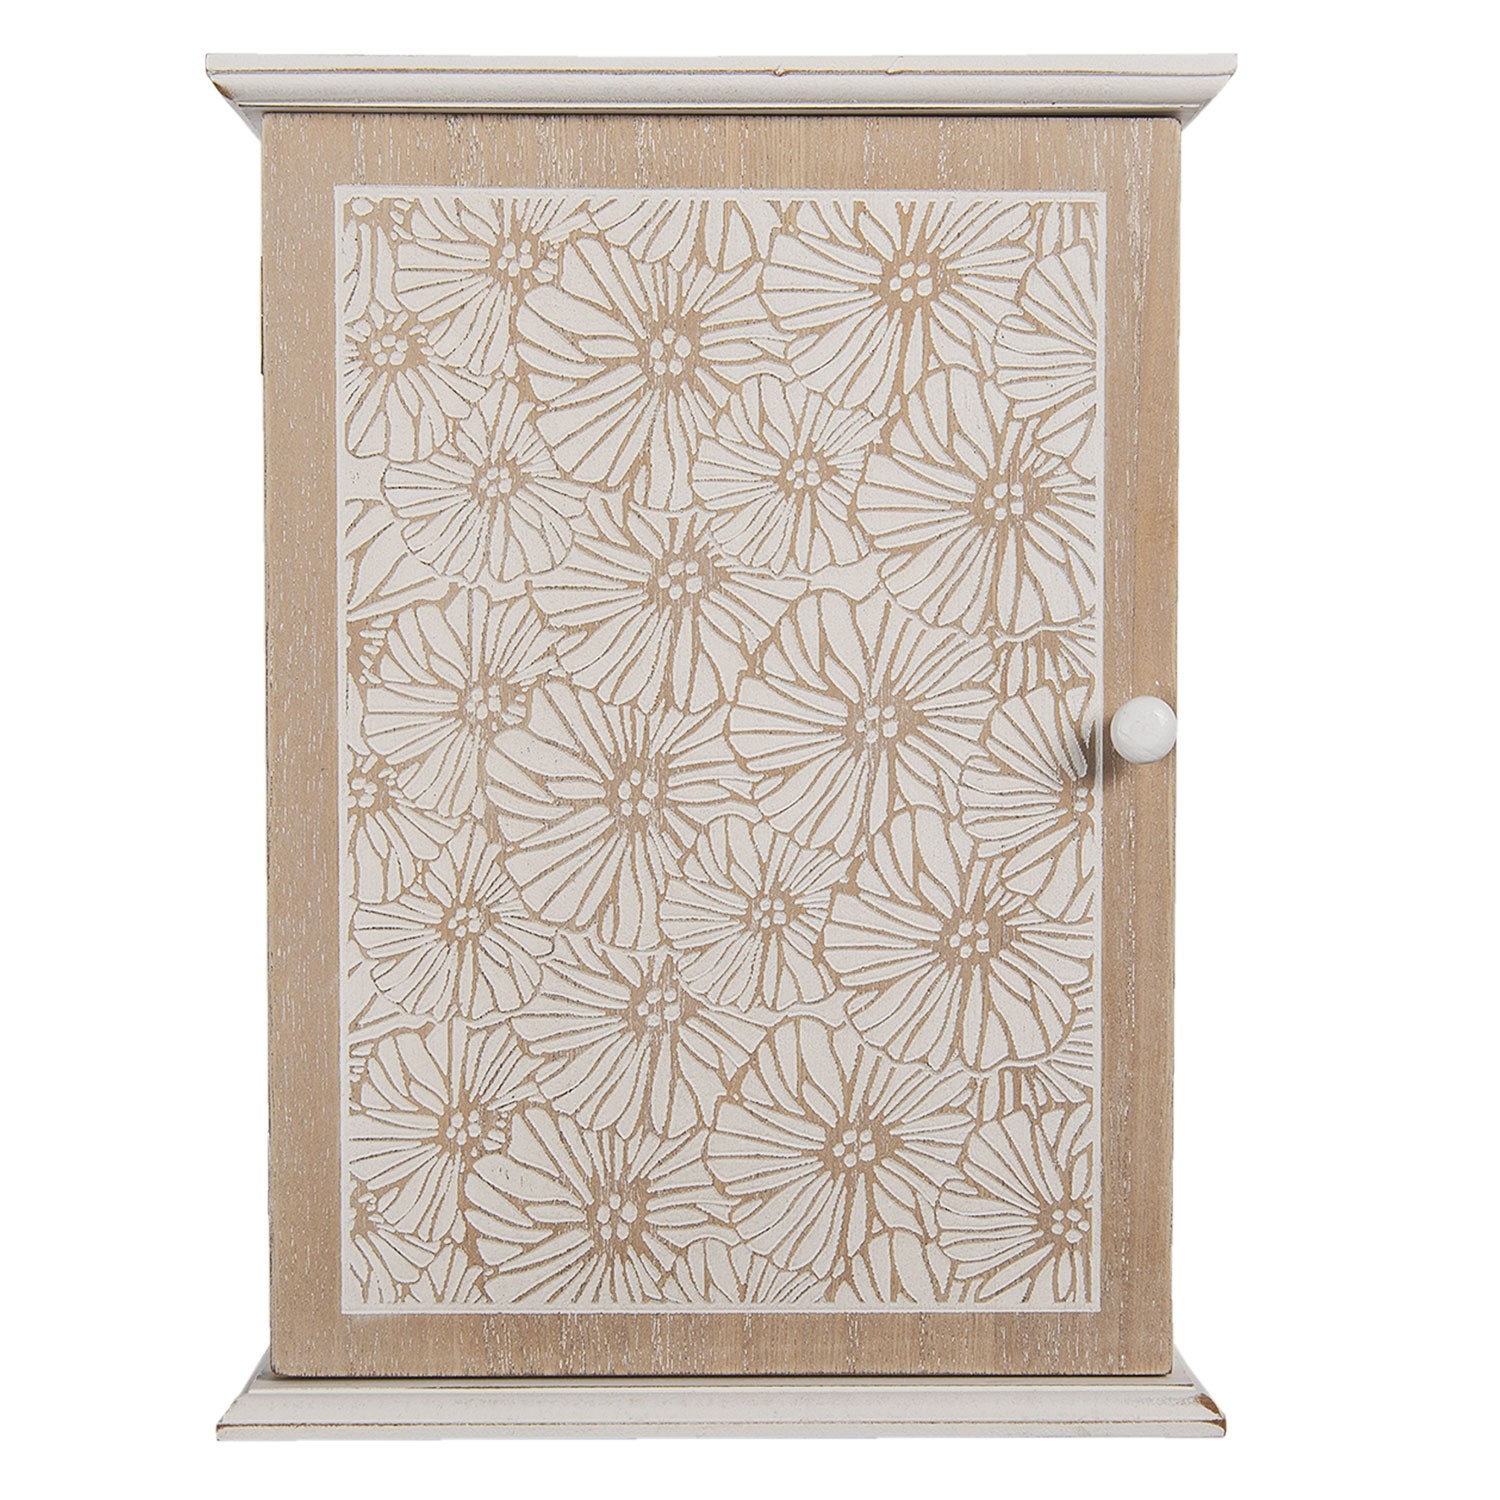 Dřevěná skříňka na klíče s květinami Page - 20*7*27 cm Clayre & Eef